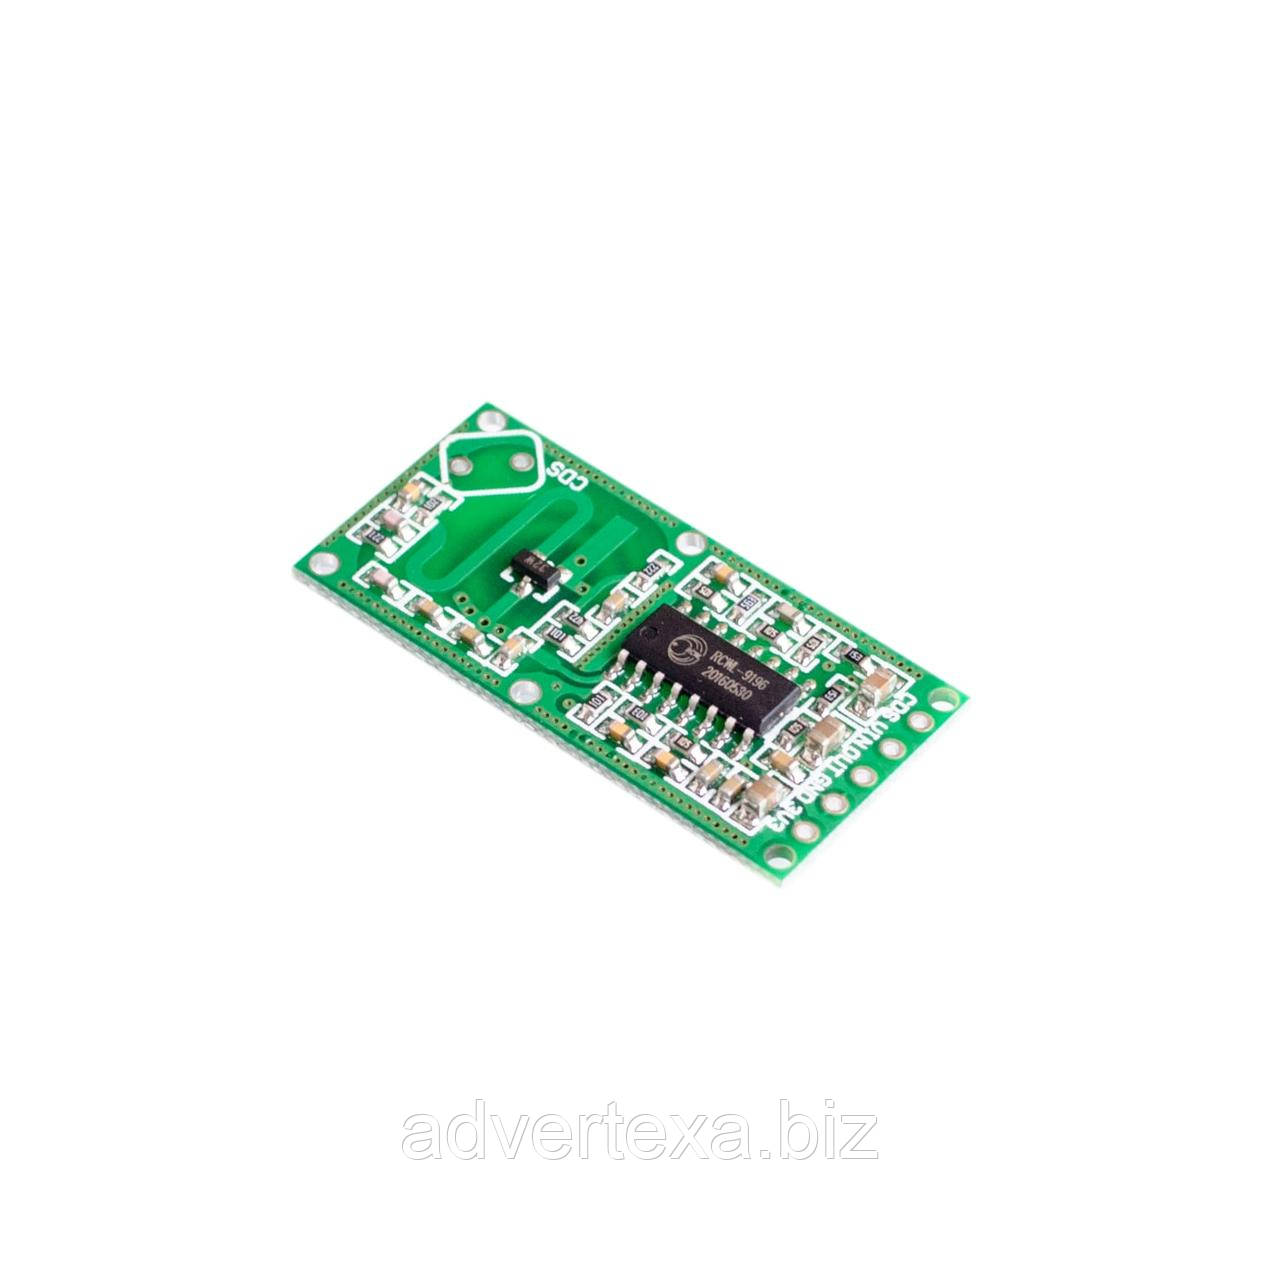 RCWL-0516 Доплерівського мікрохвильовий датчик руху для Arduino, Raspberry pi